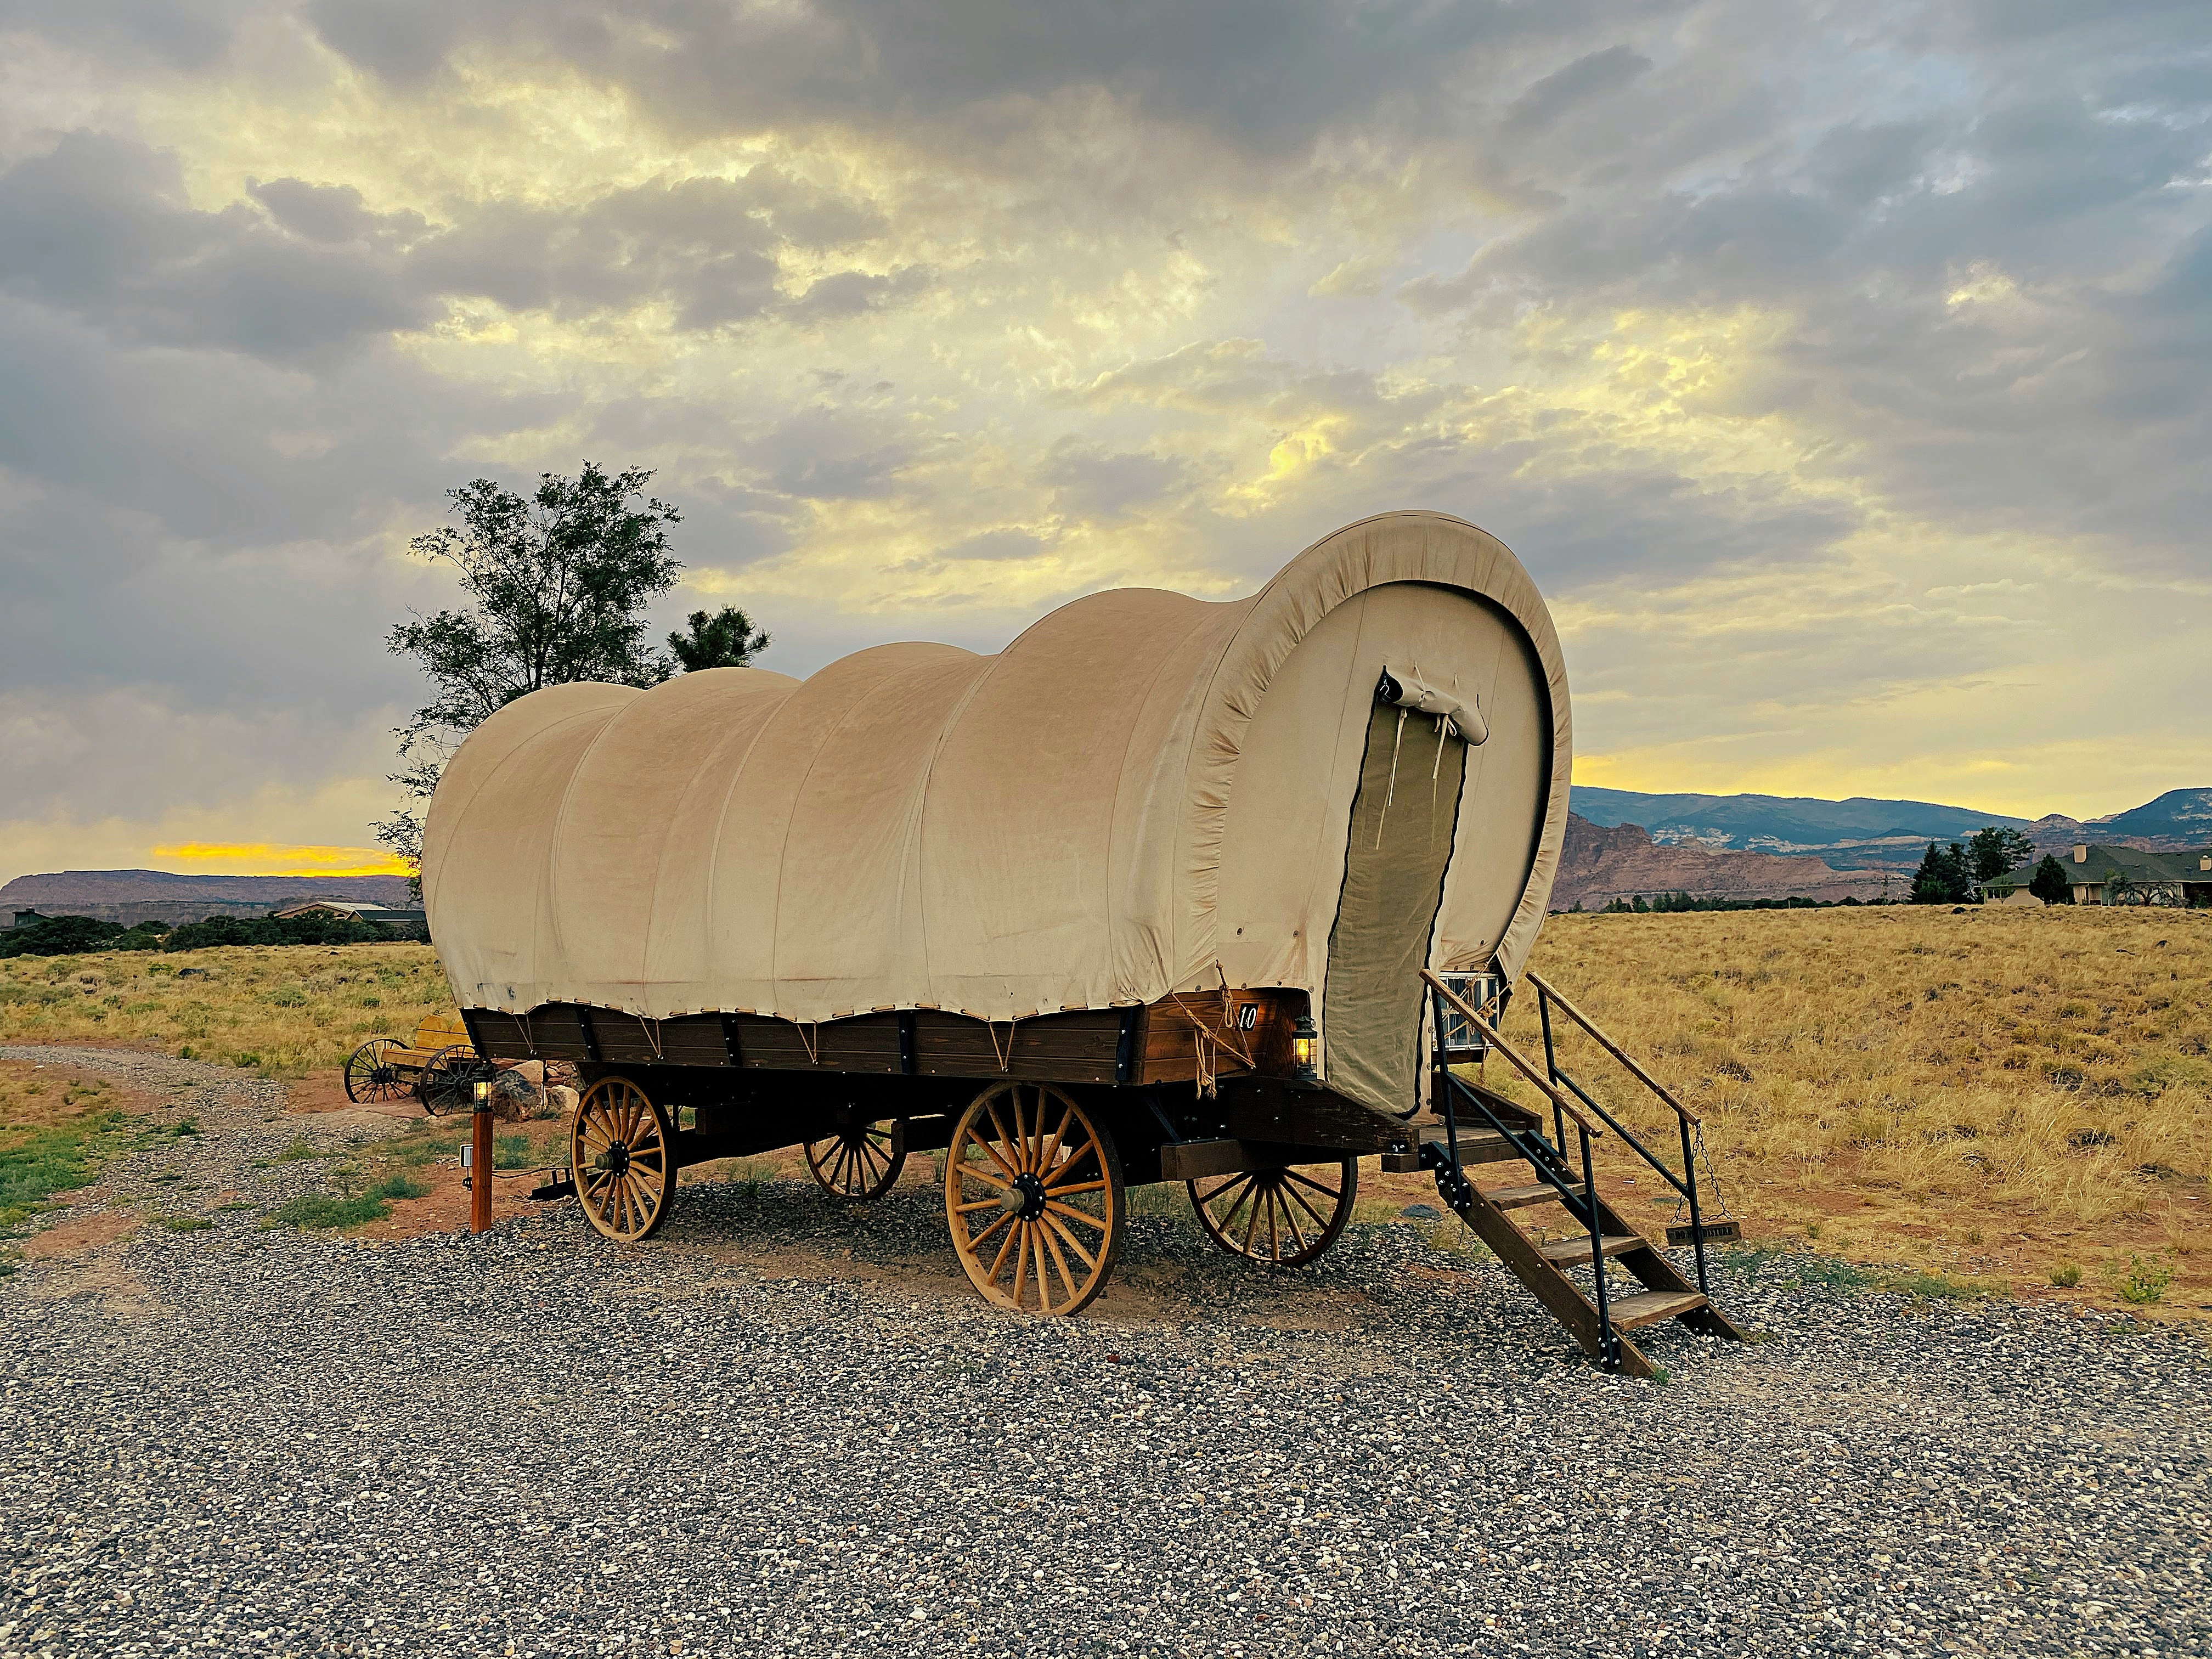 Gypsy wagons